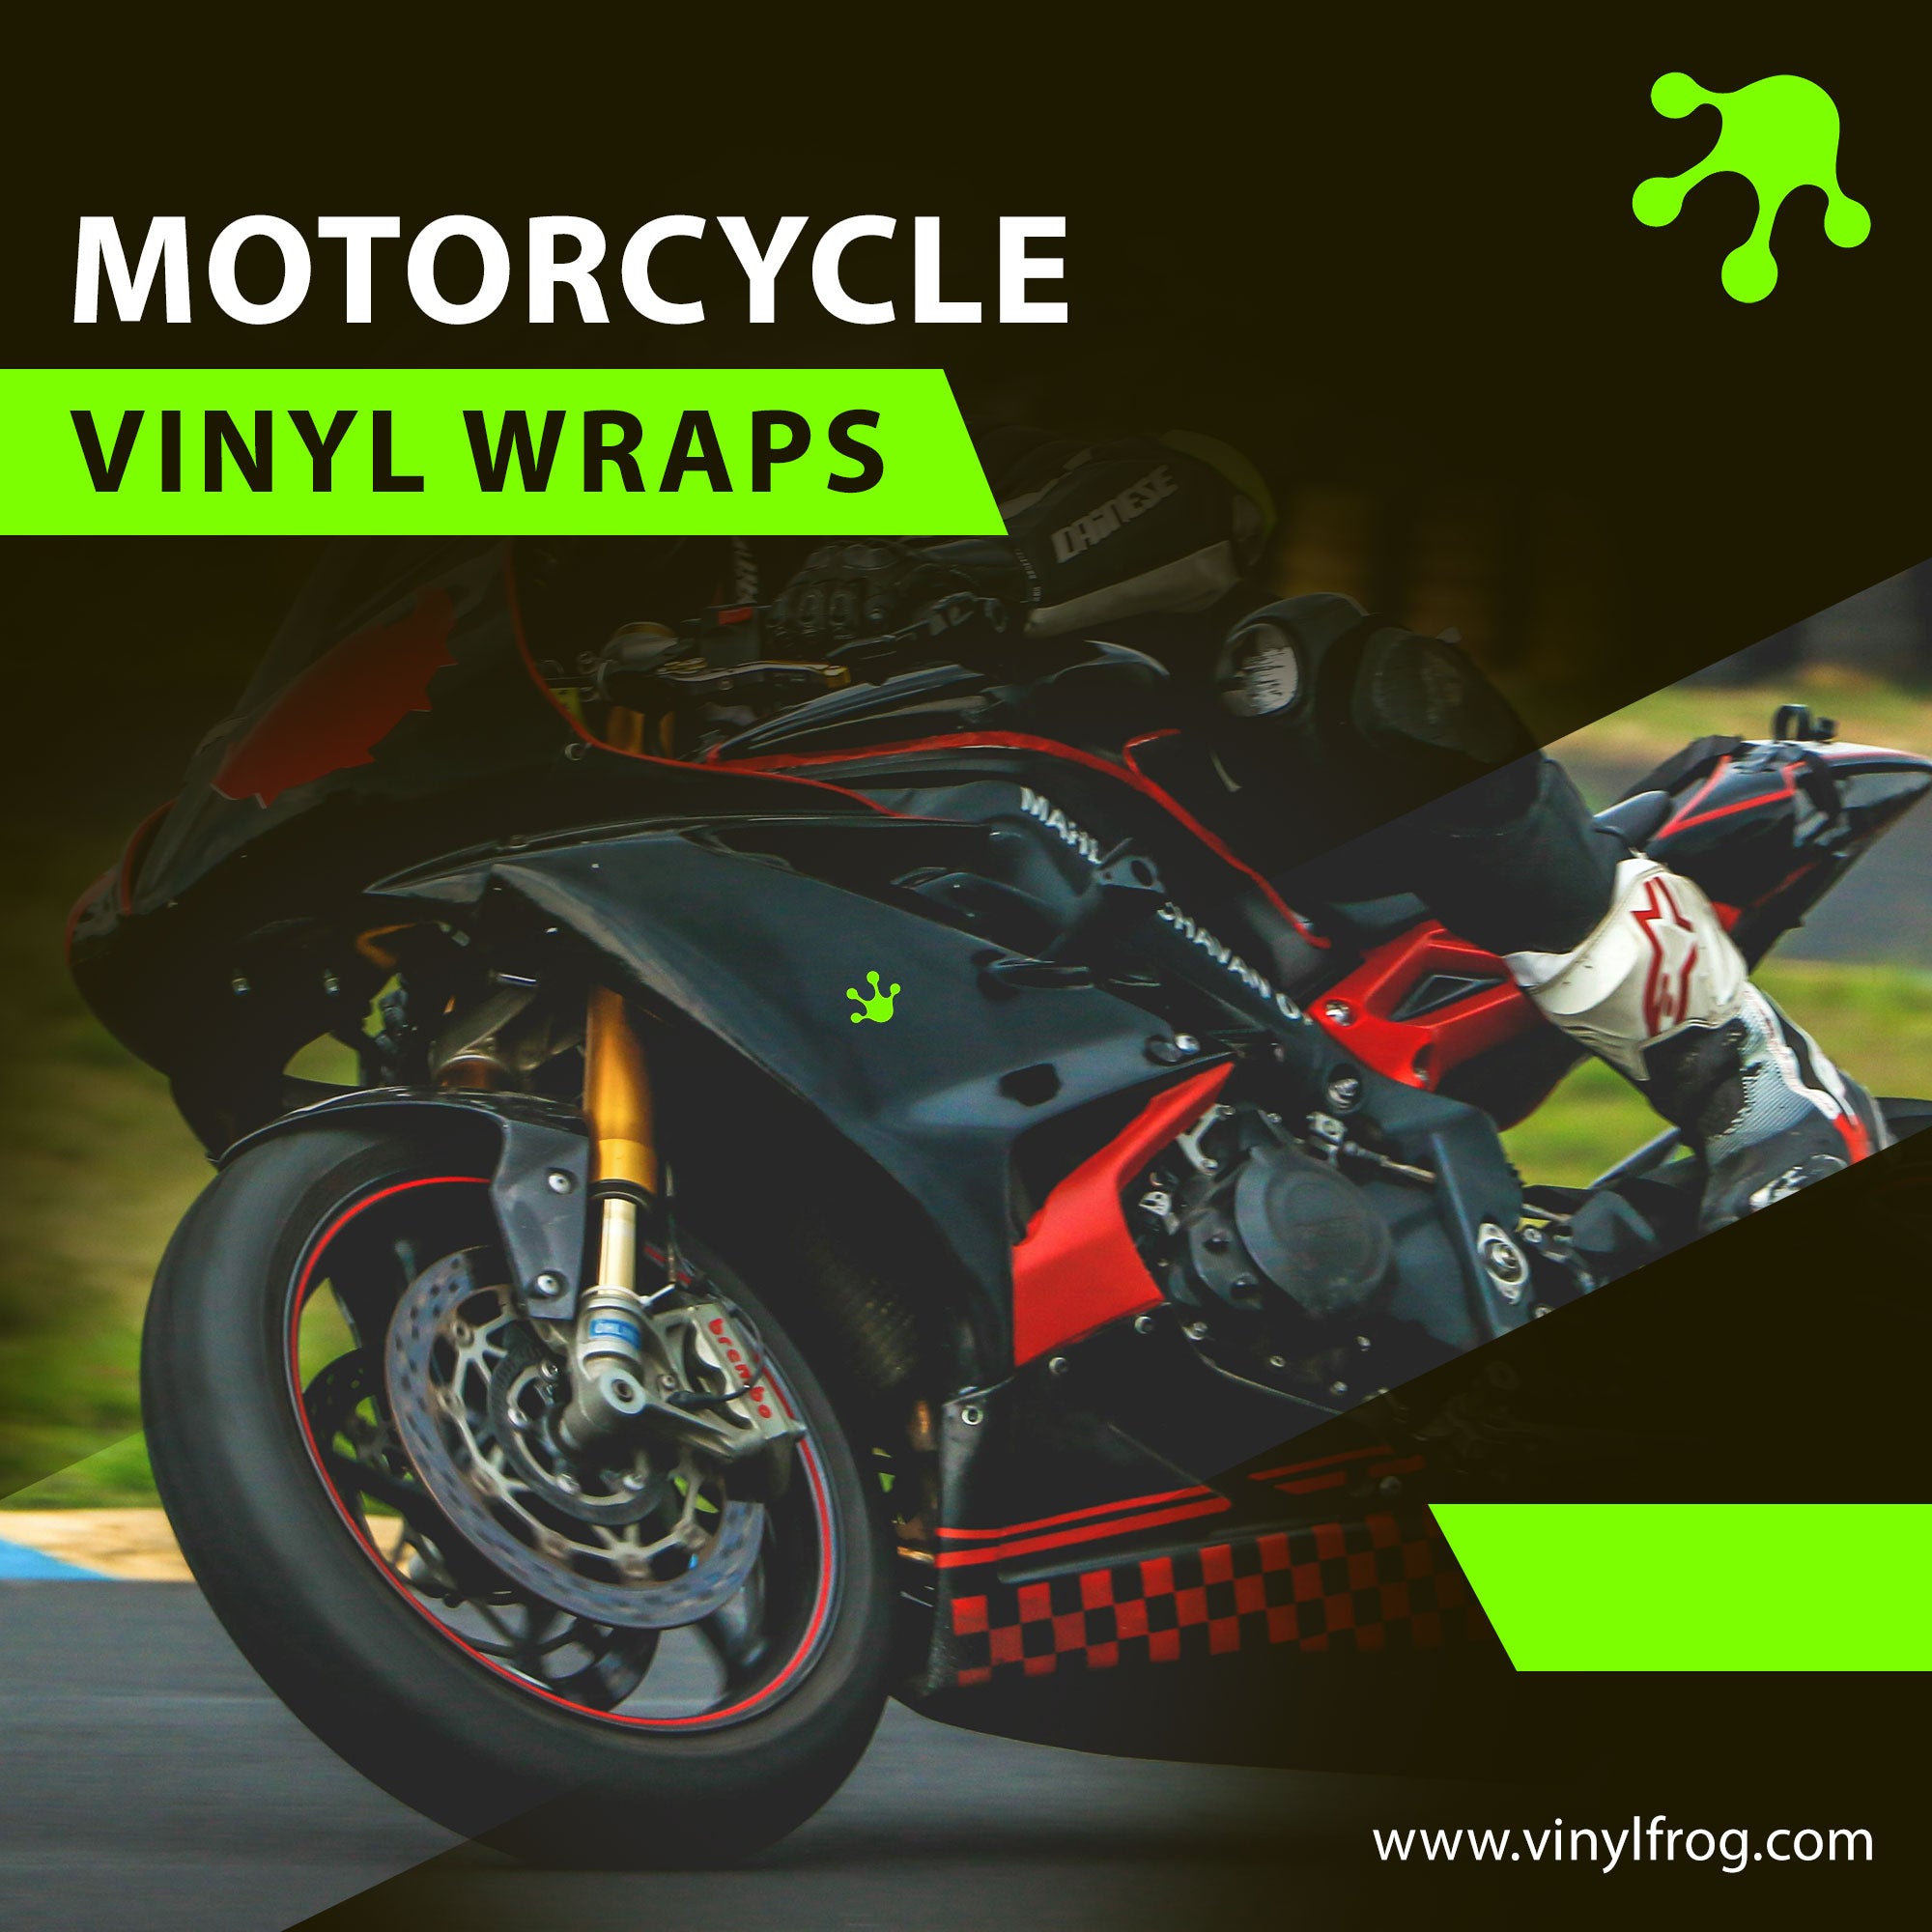 Motorcycle Vinyl Wraps